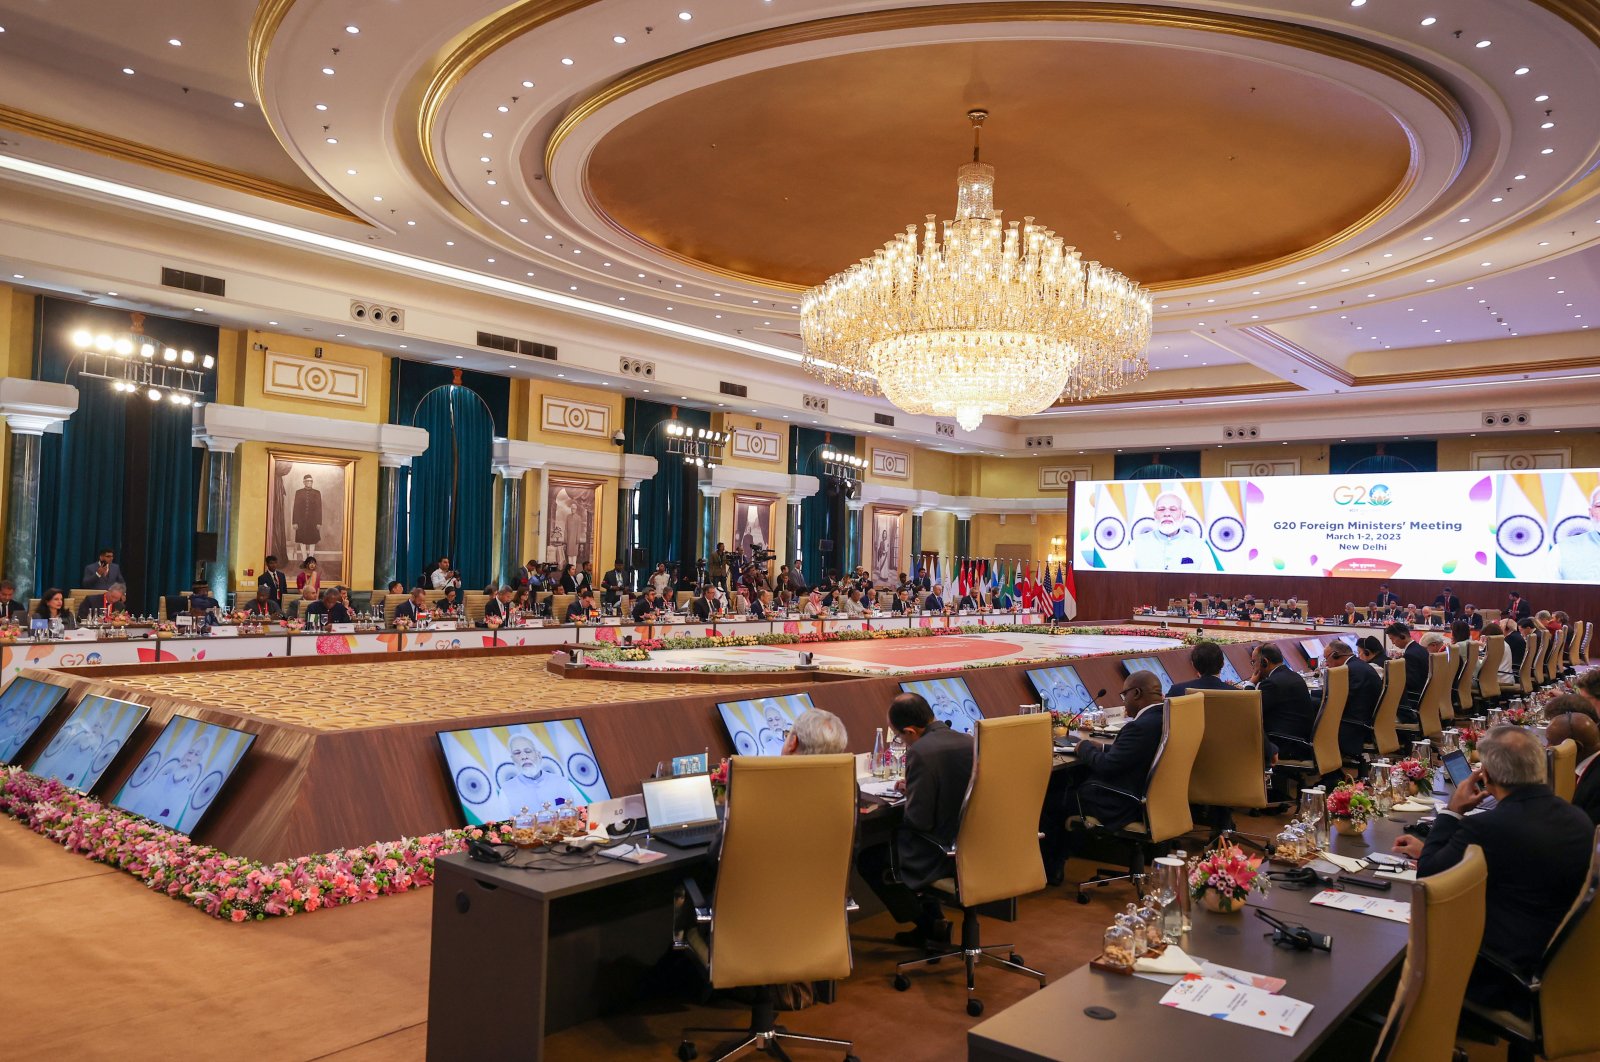 Ukraina mendominasi agenda pertemuan Menteri Luar Negeri G-20 di India